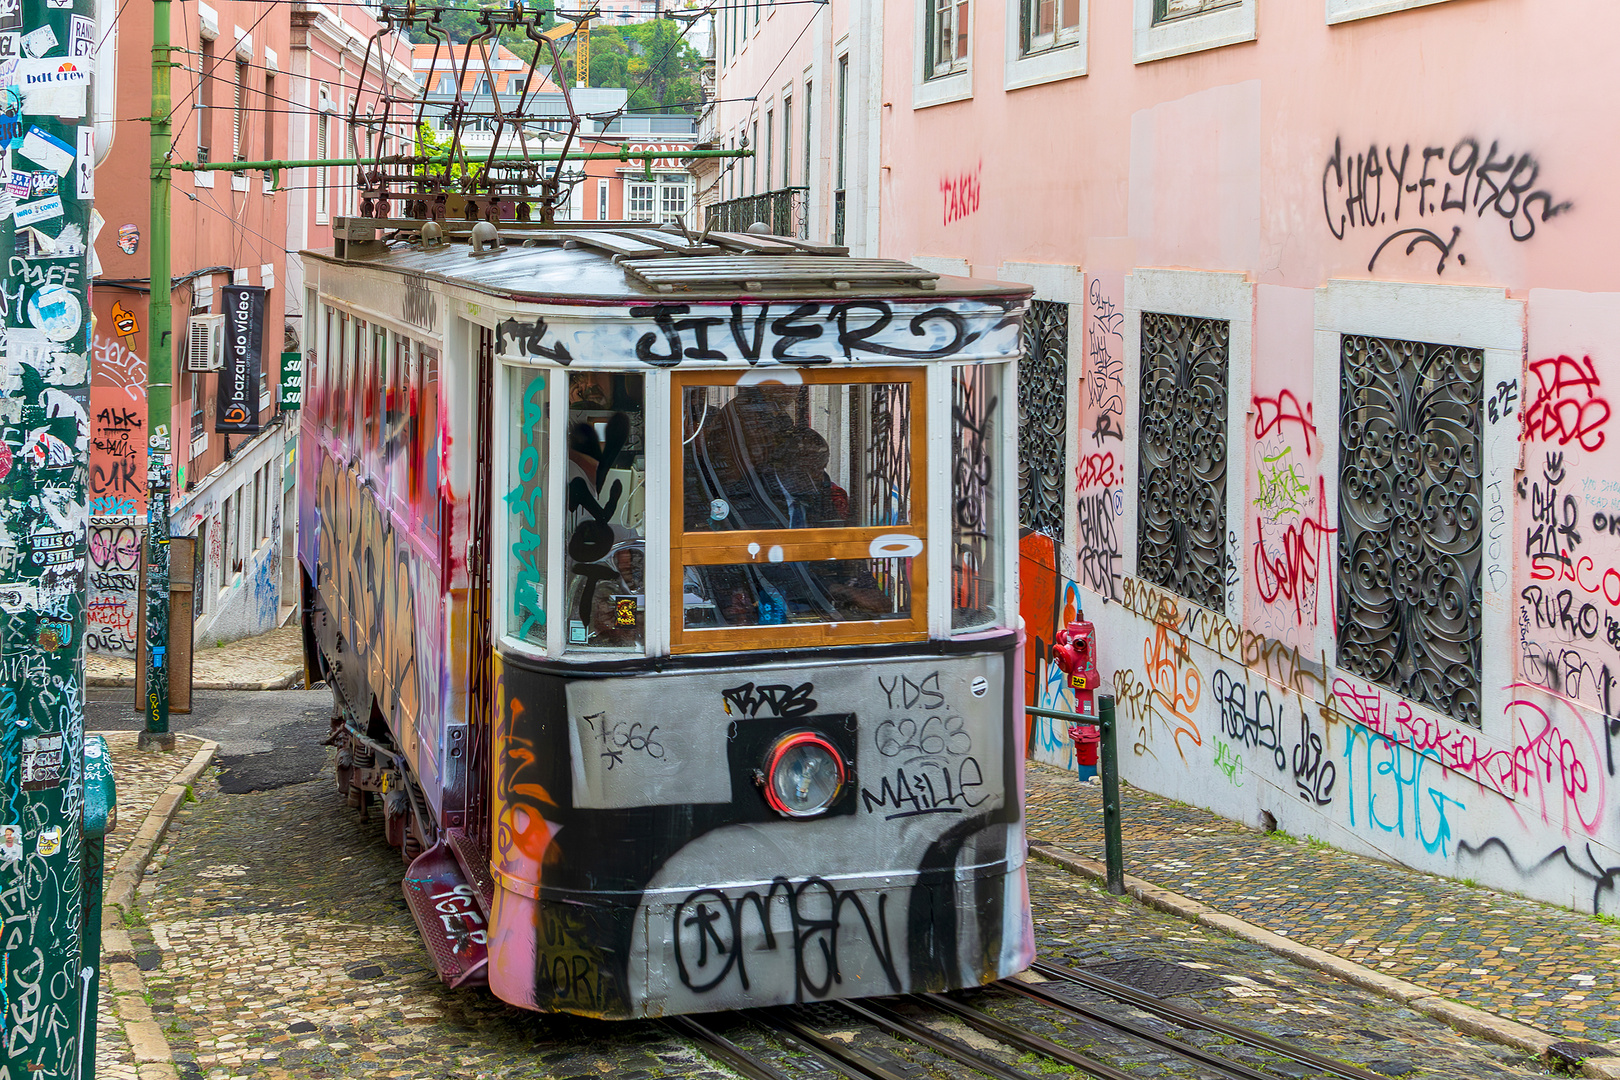 Graffiti-Trambahn upstairs, Lissabon